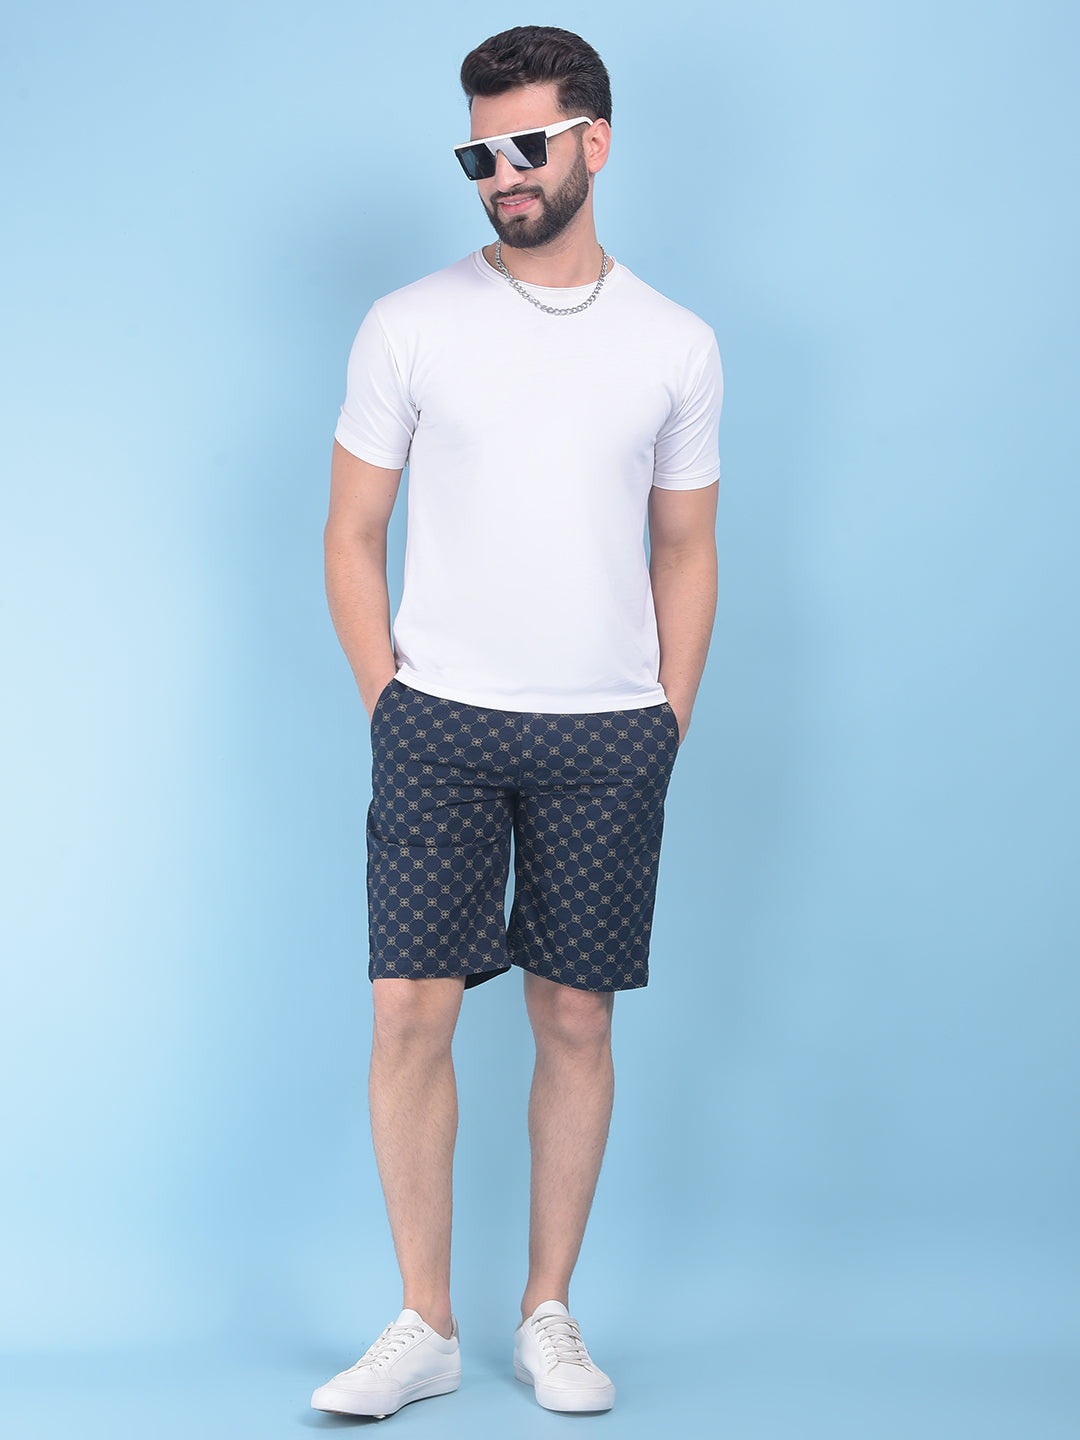 Blue Floral Print 100% Cotton Shorts-Men Shorts-Crimsoune Club